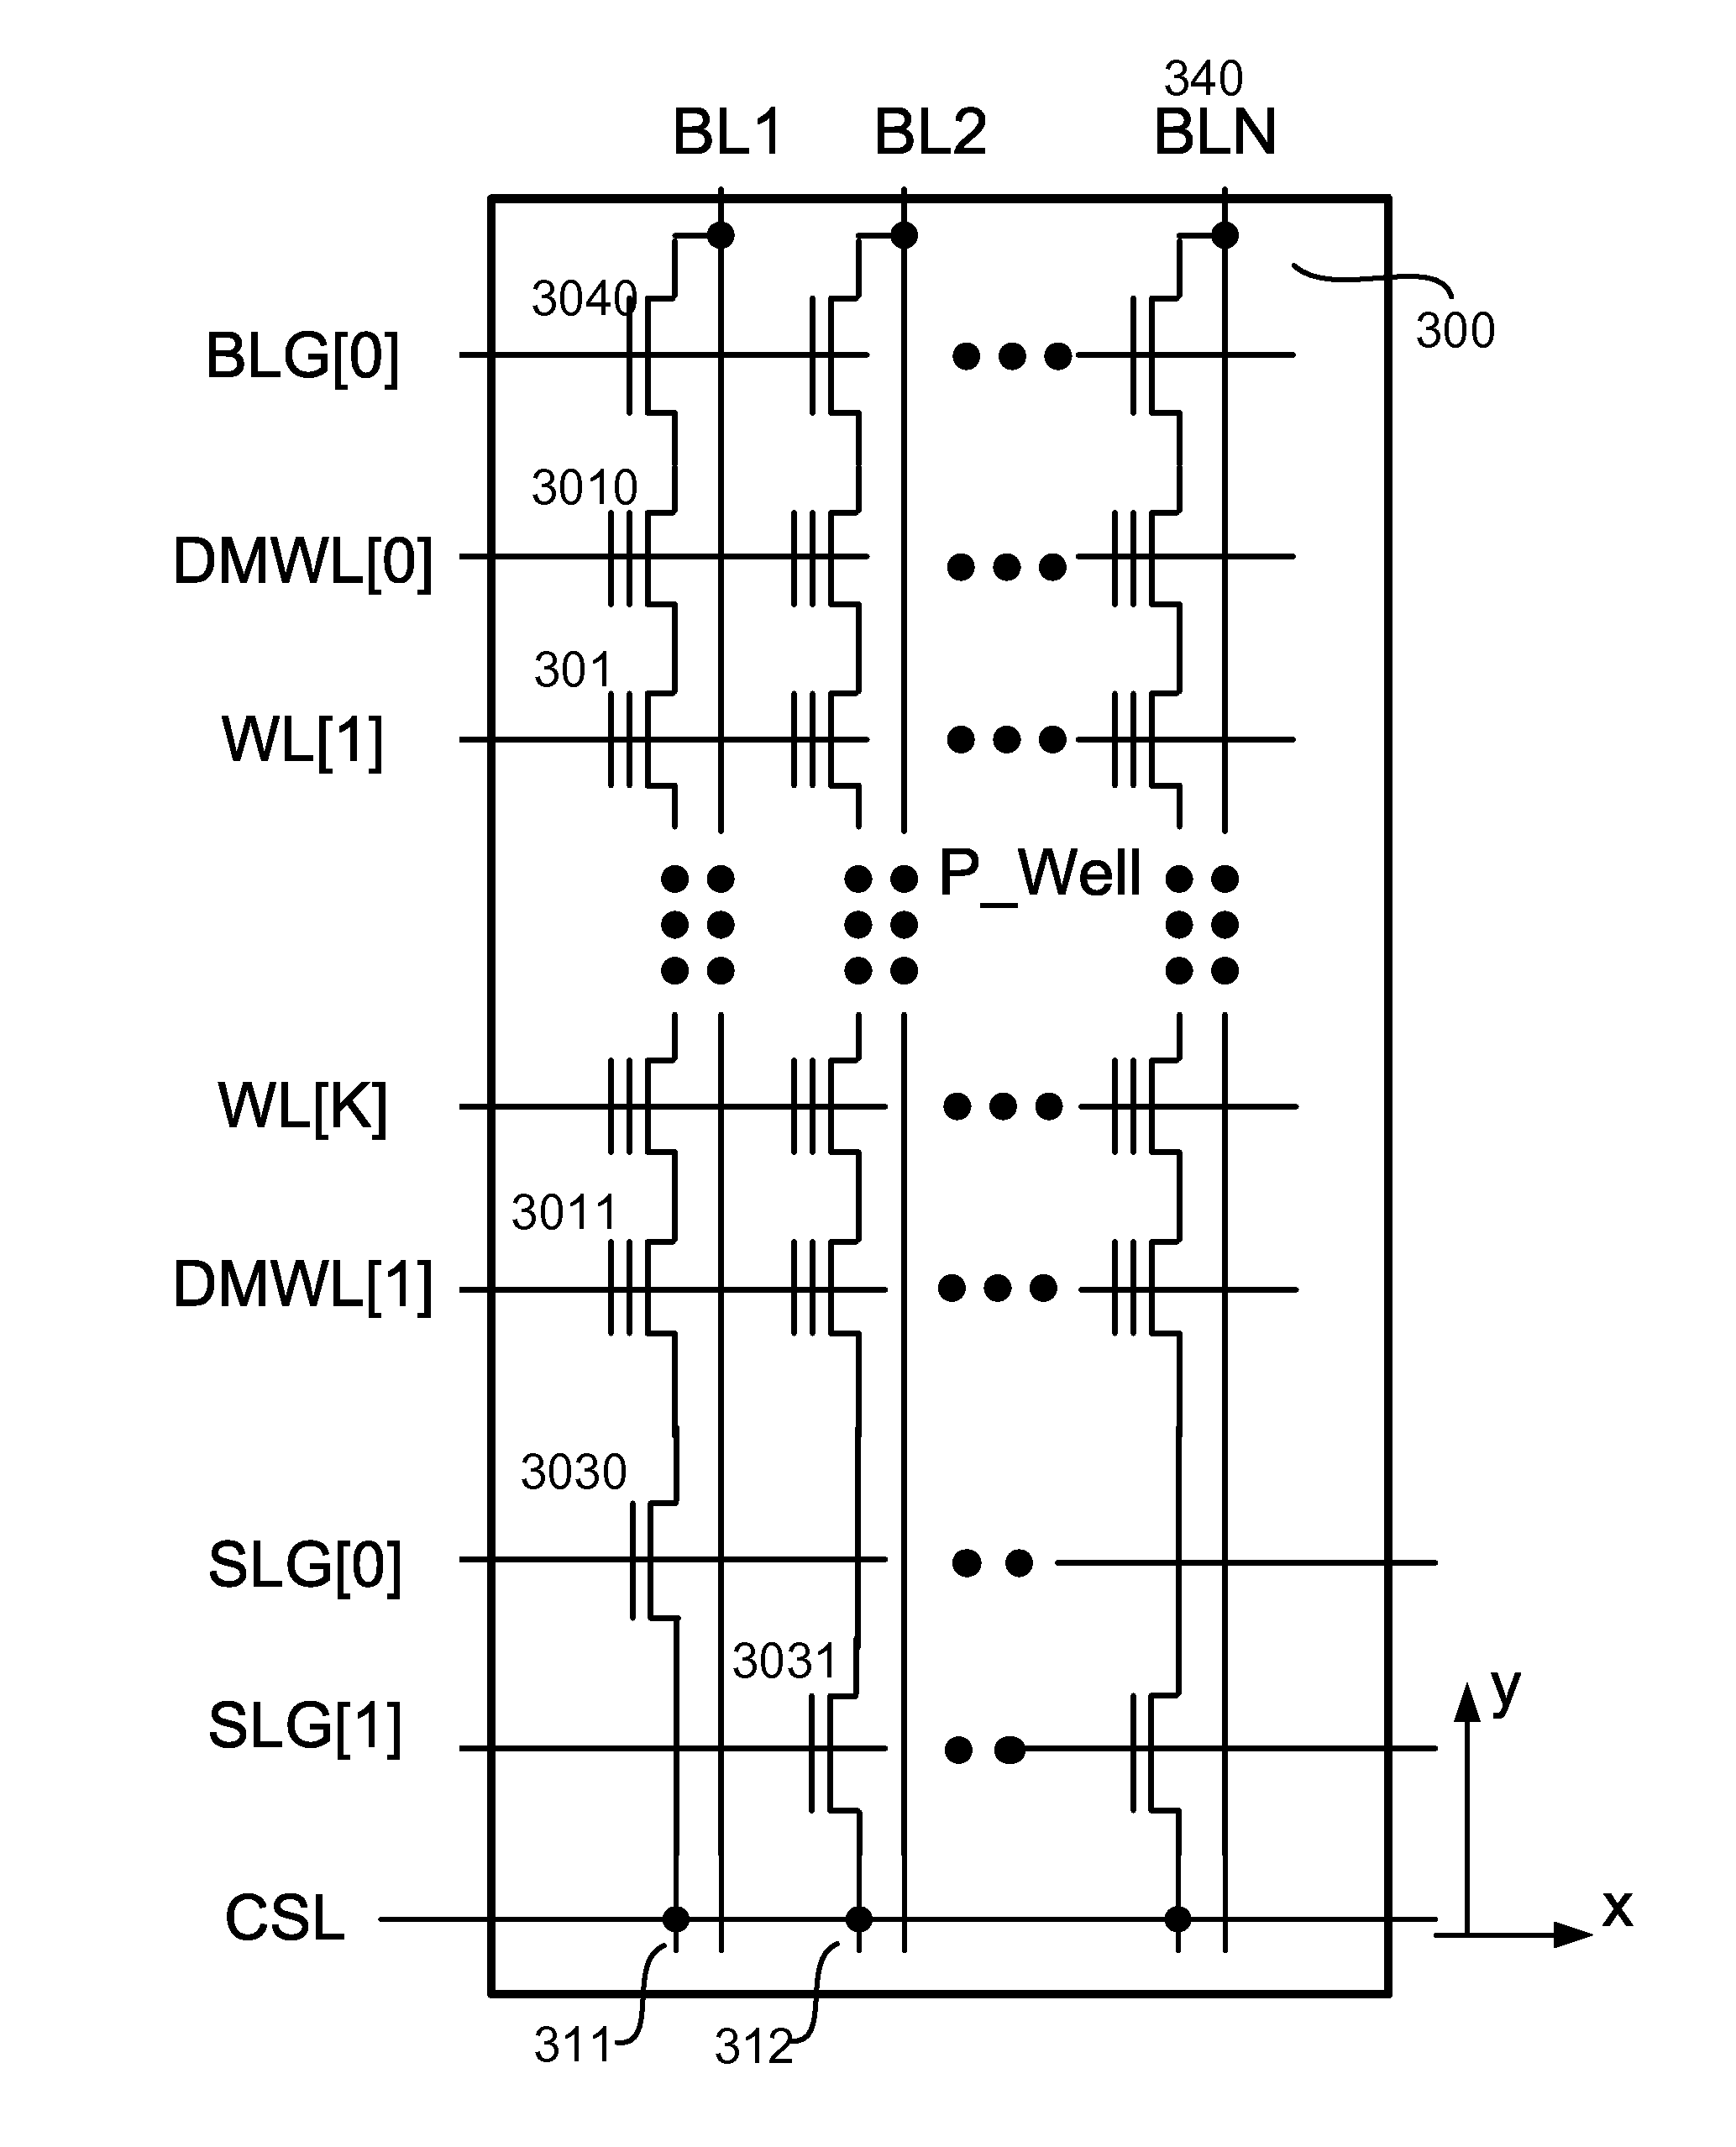 Non-boosting program inhibit scheme in NAND design